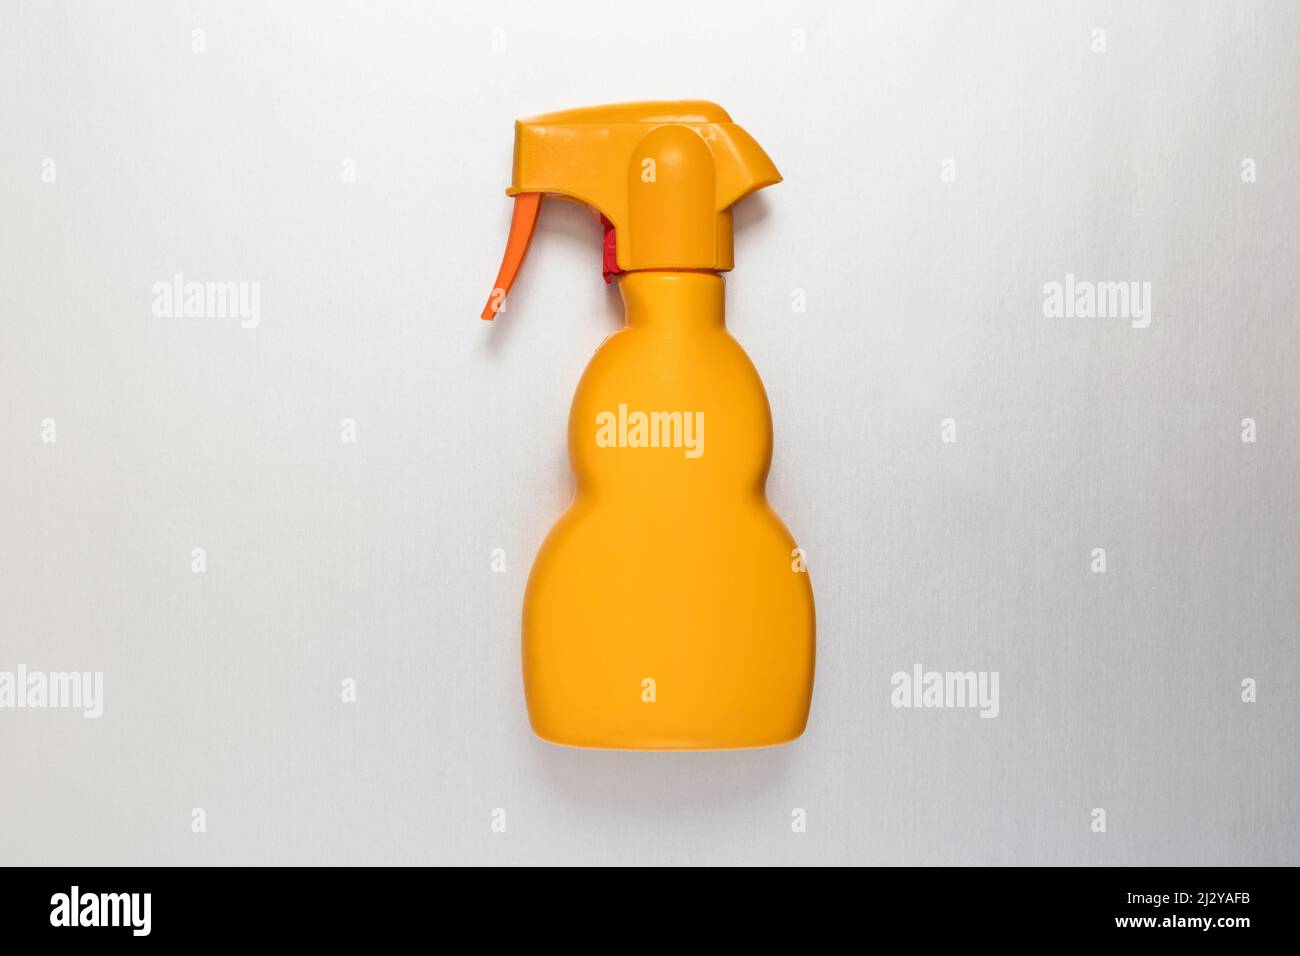 Generische, unbeschriftete gelbe Kunststoffsprühflasche, flach auf Weiß liegend, in einem Konzept der Einzelhandelsverpackung und der Haushaltshygiene mit Copyspace Stockfoto